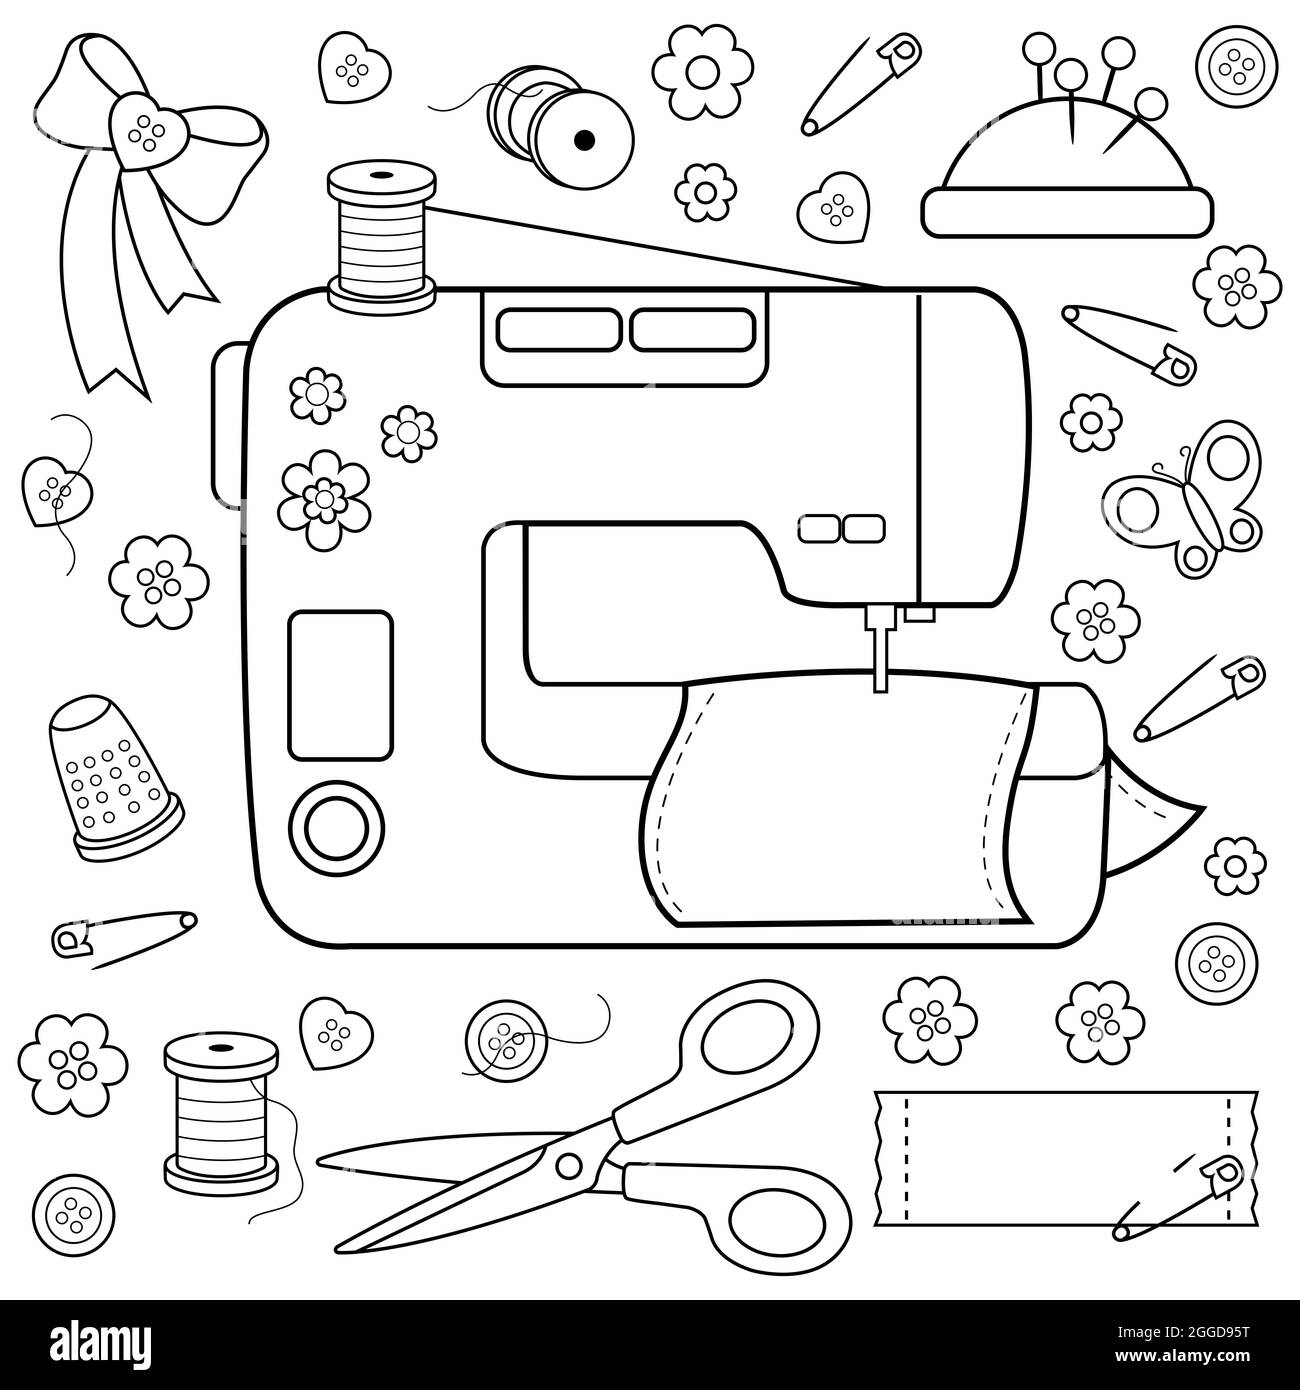 Dibujos de máquinas de coser antiguas para colorear